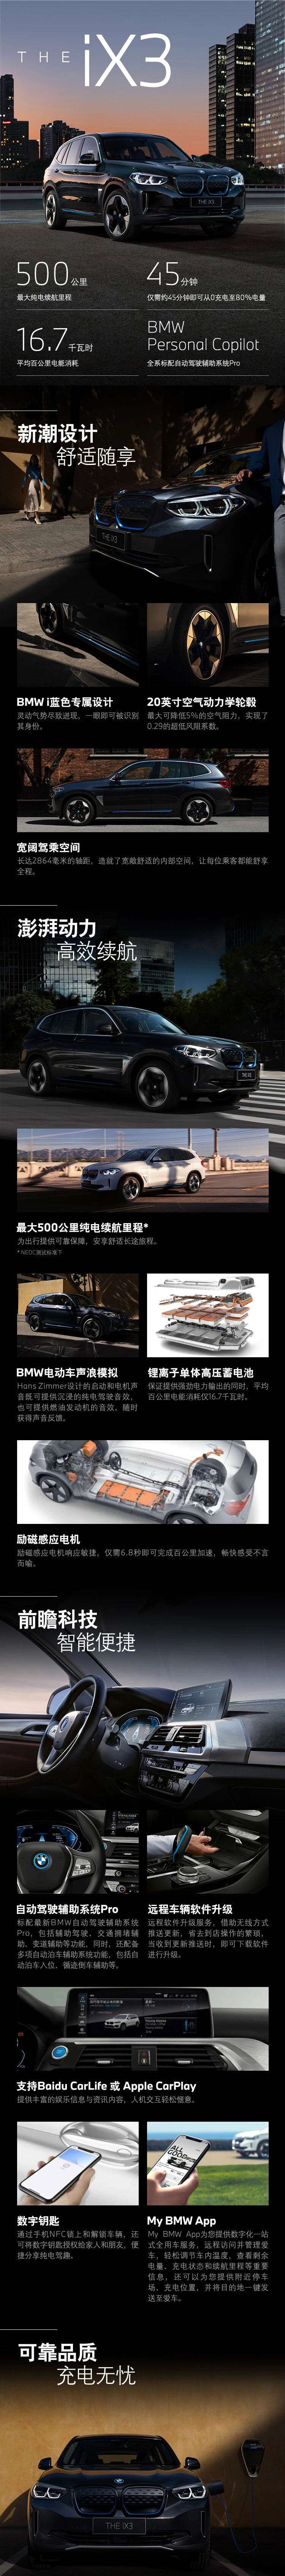 电动驾趣 无忧开启 创新纯电动BMW iX3吾悦广场展示品鉴会